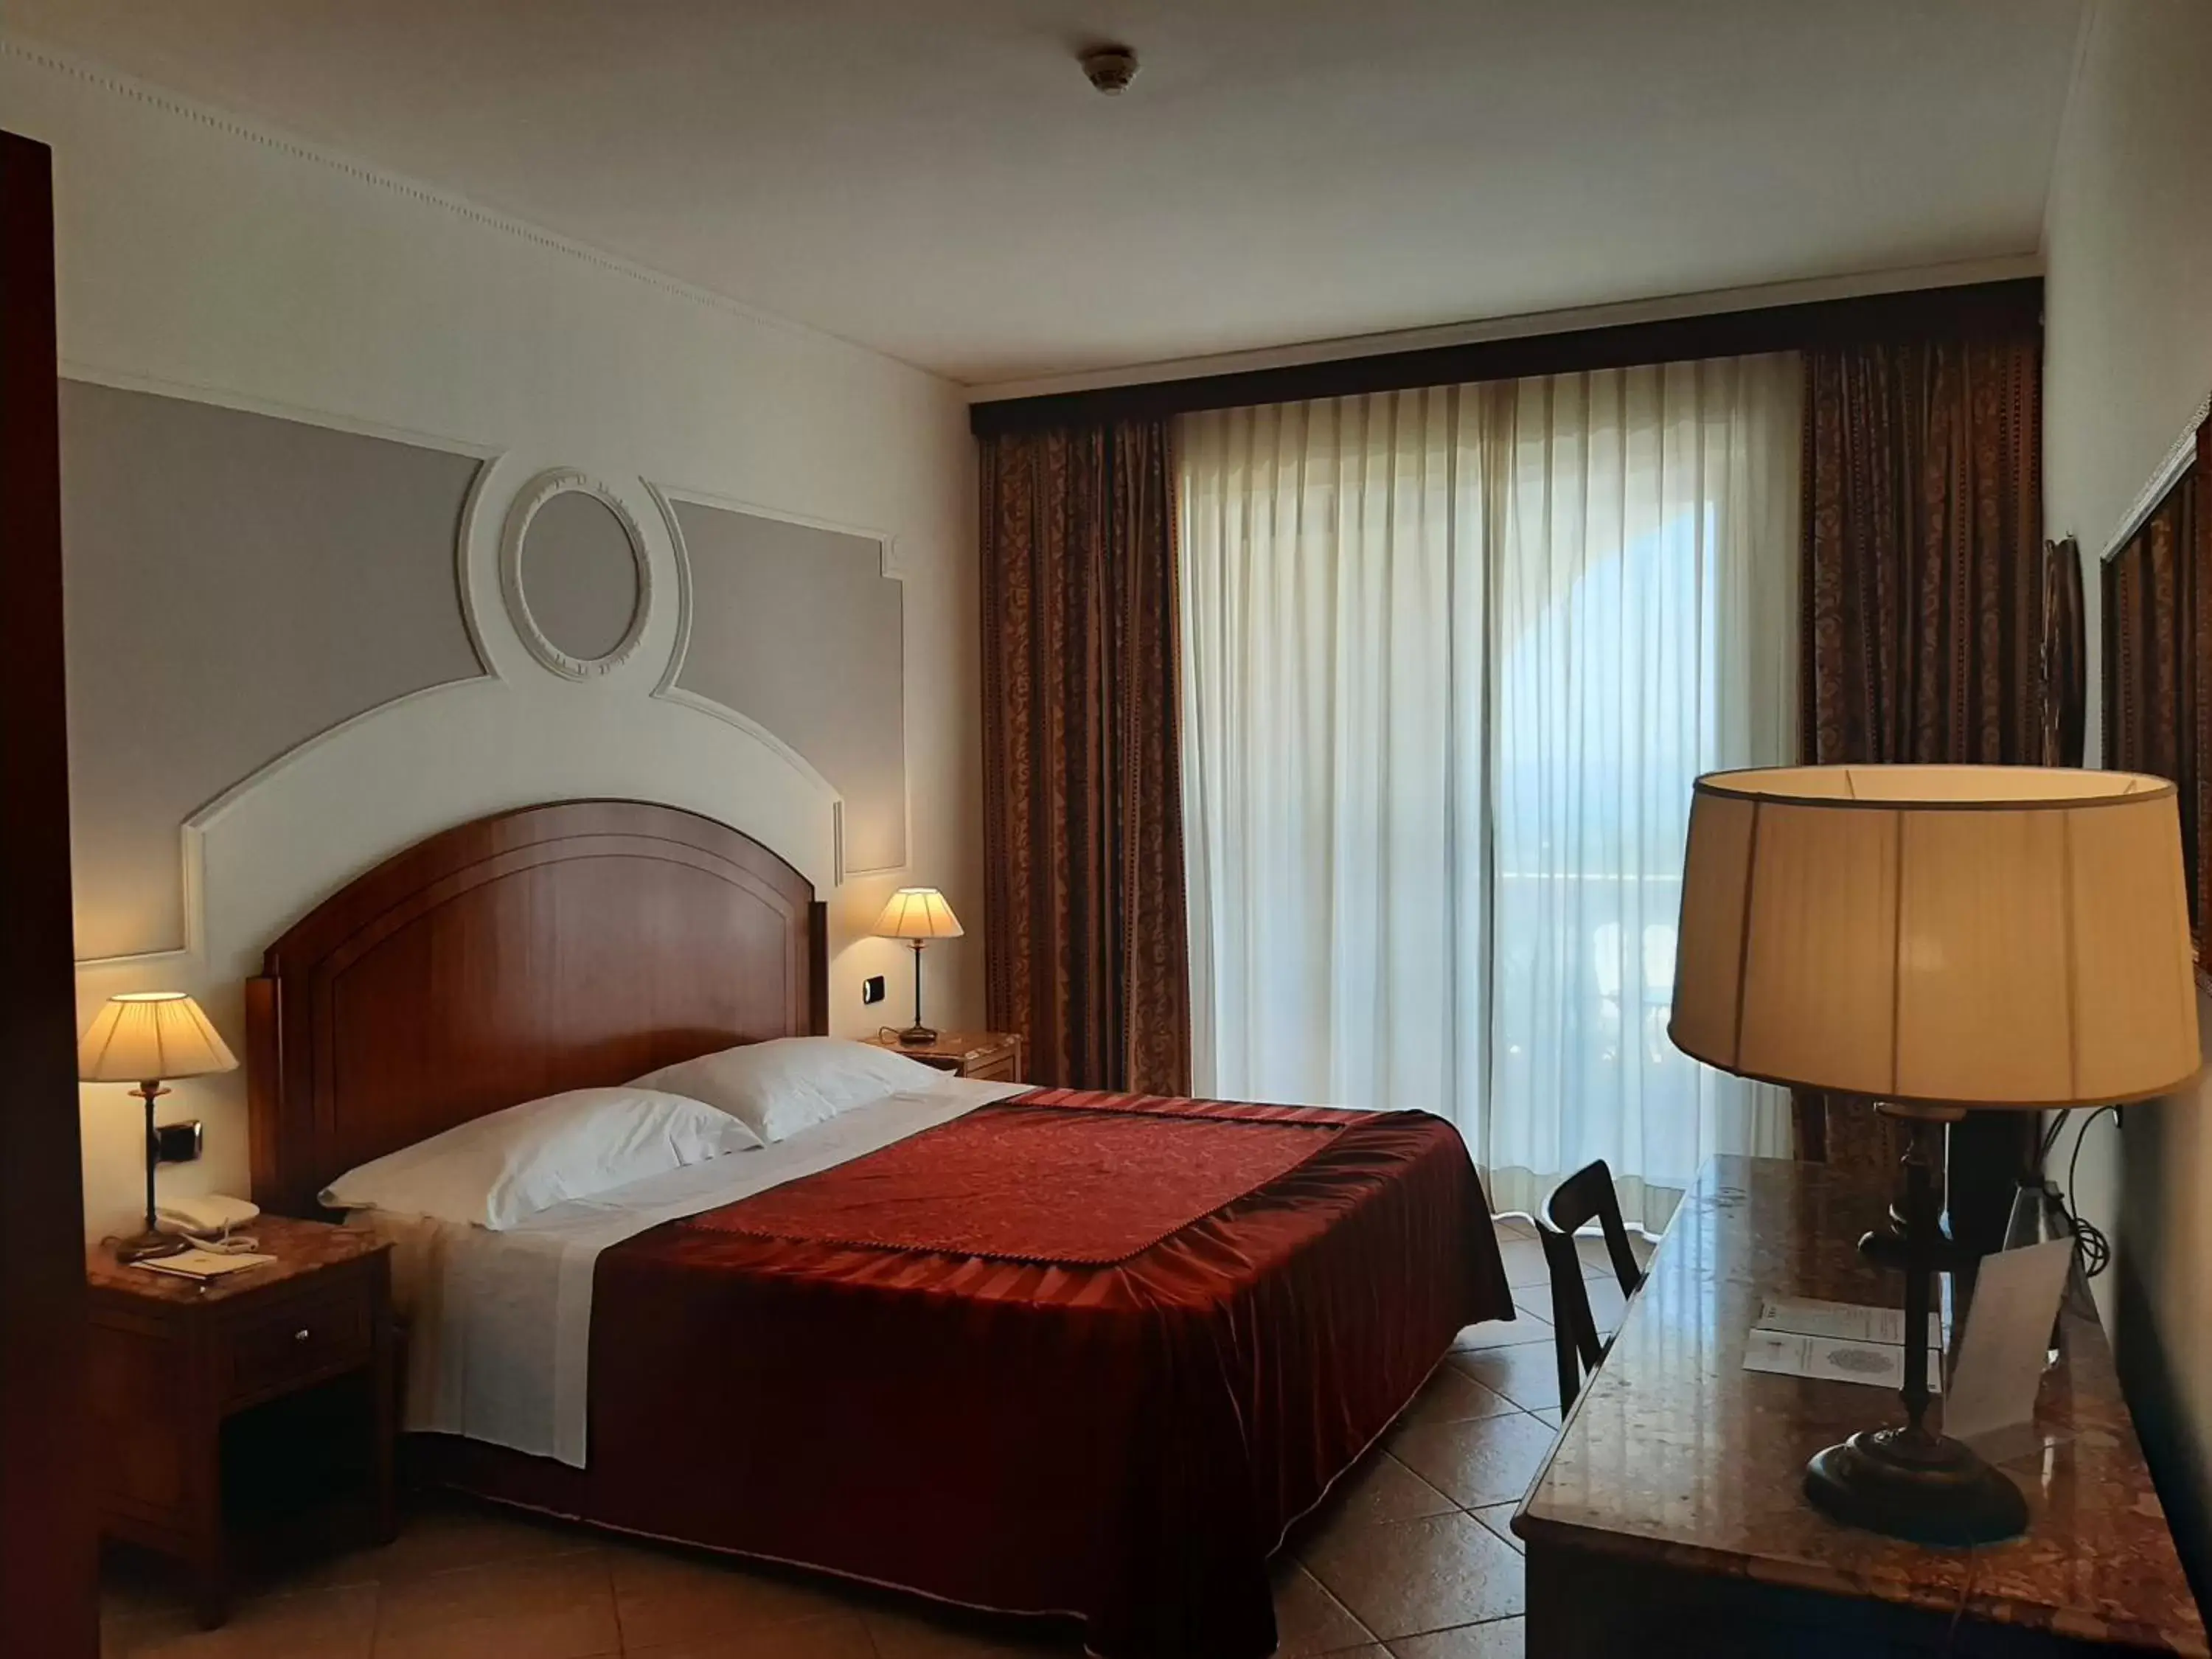 Bedroom, Bed in Parco dei Principi Hotel